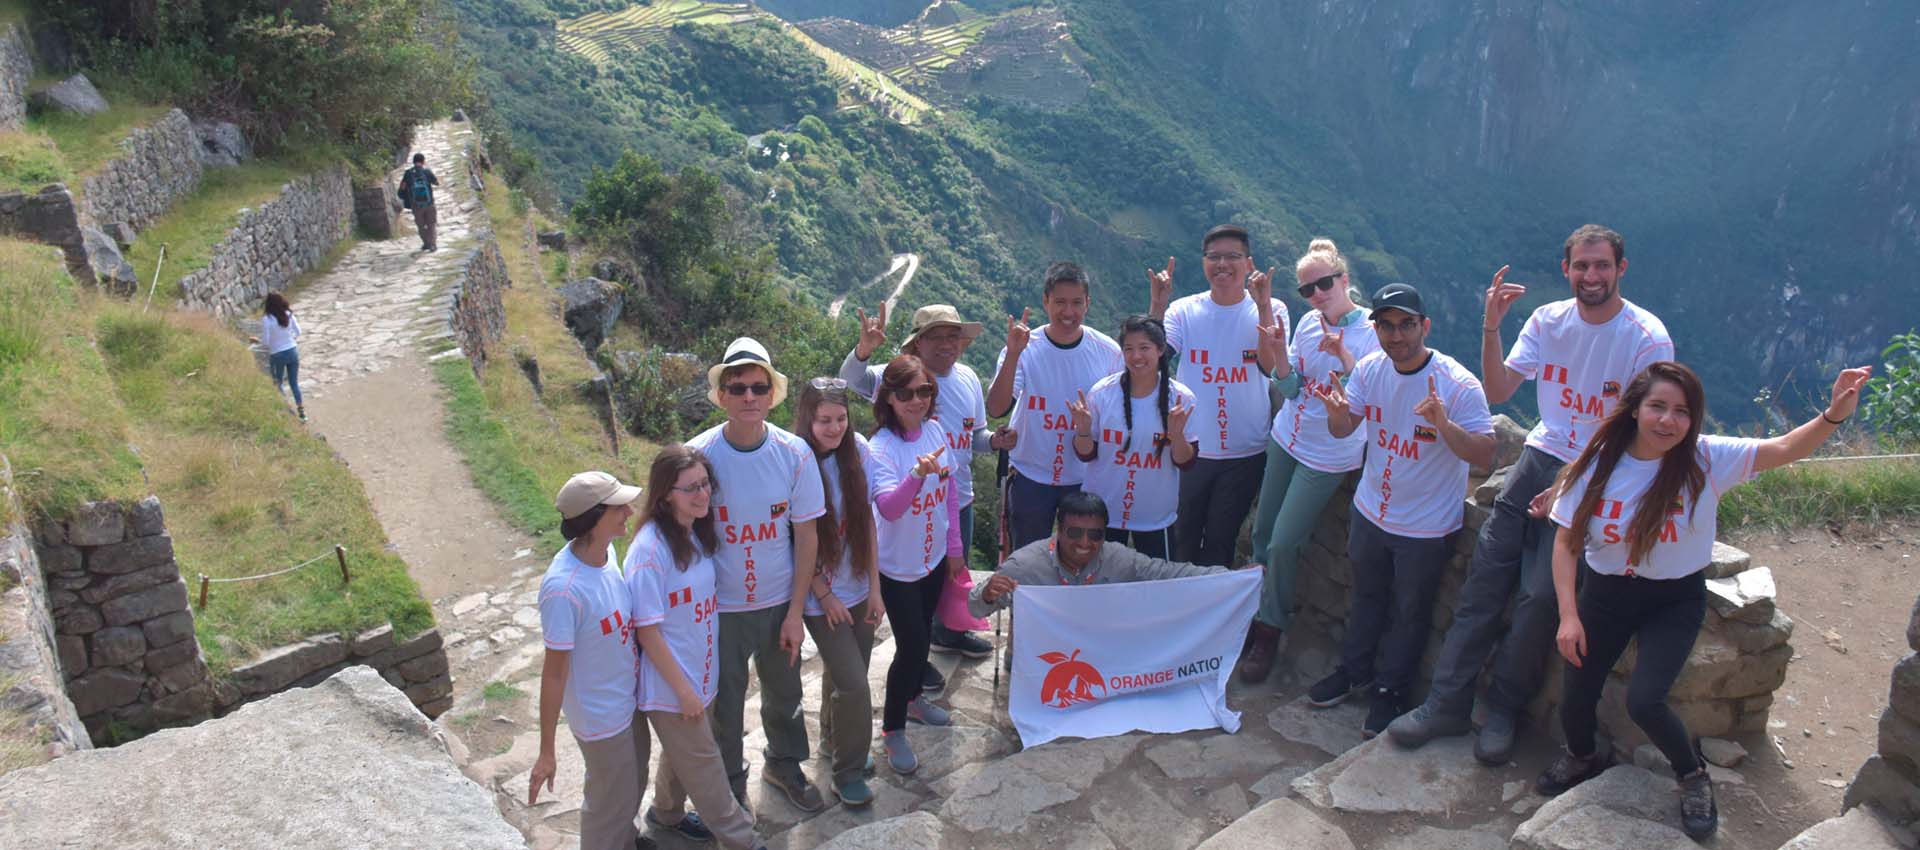 Short Inca Trail to Machu Picchu with CAMPING - Orange Nation Peru